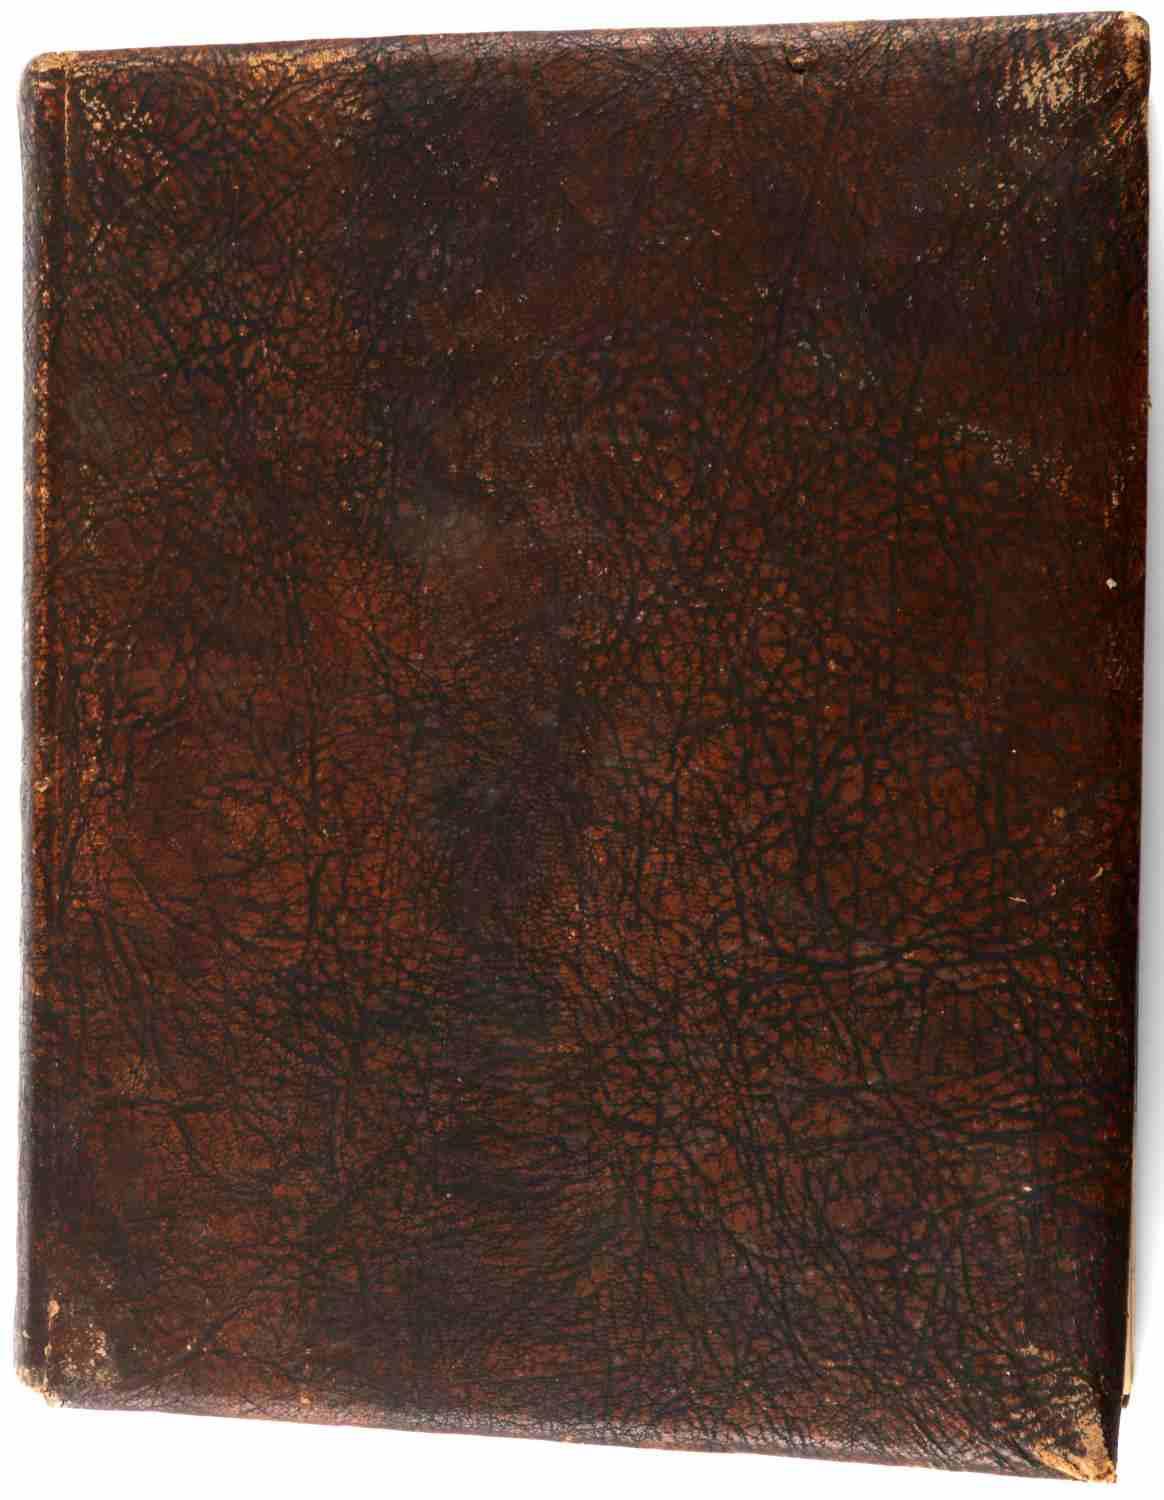 BRADLEY & EISENHOWER 1915 WESTPOINT YEAR BOOK